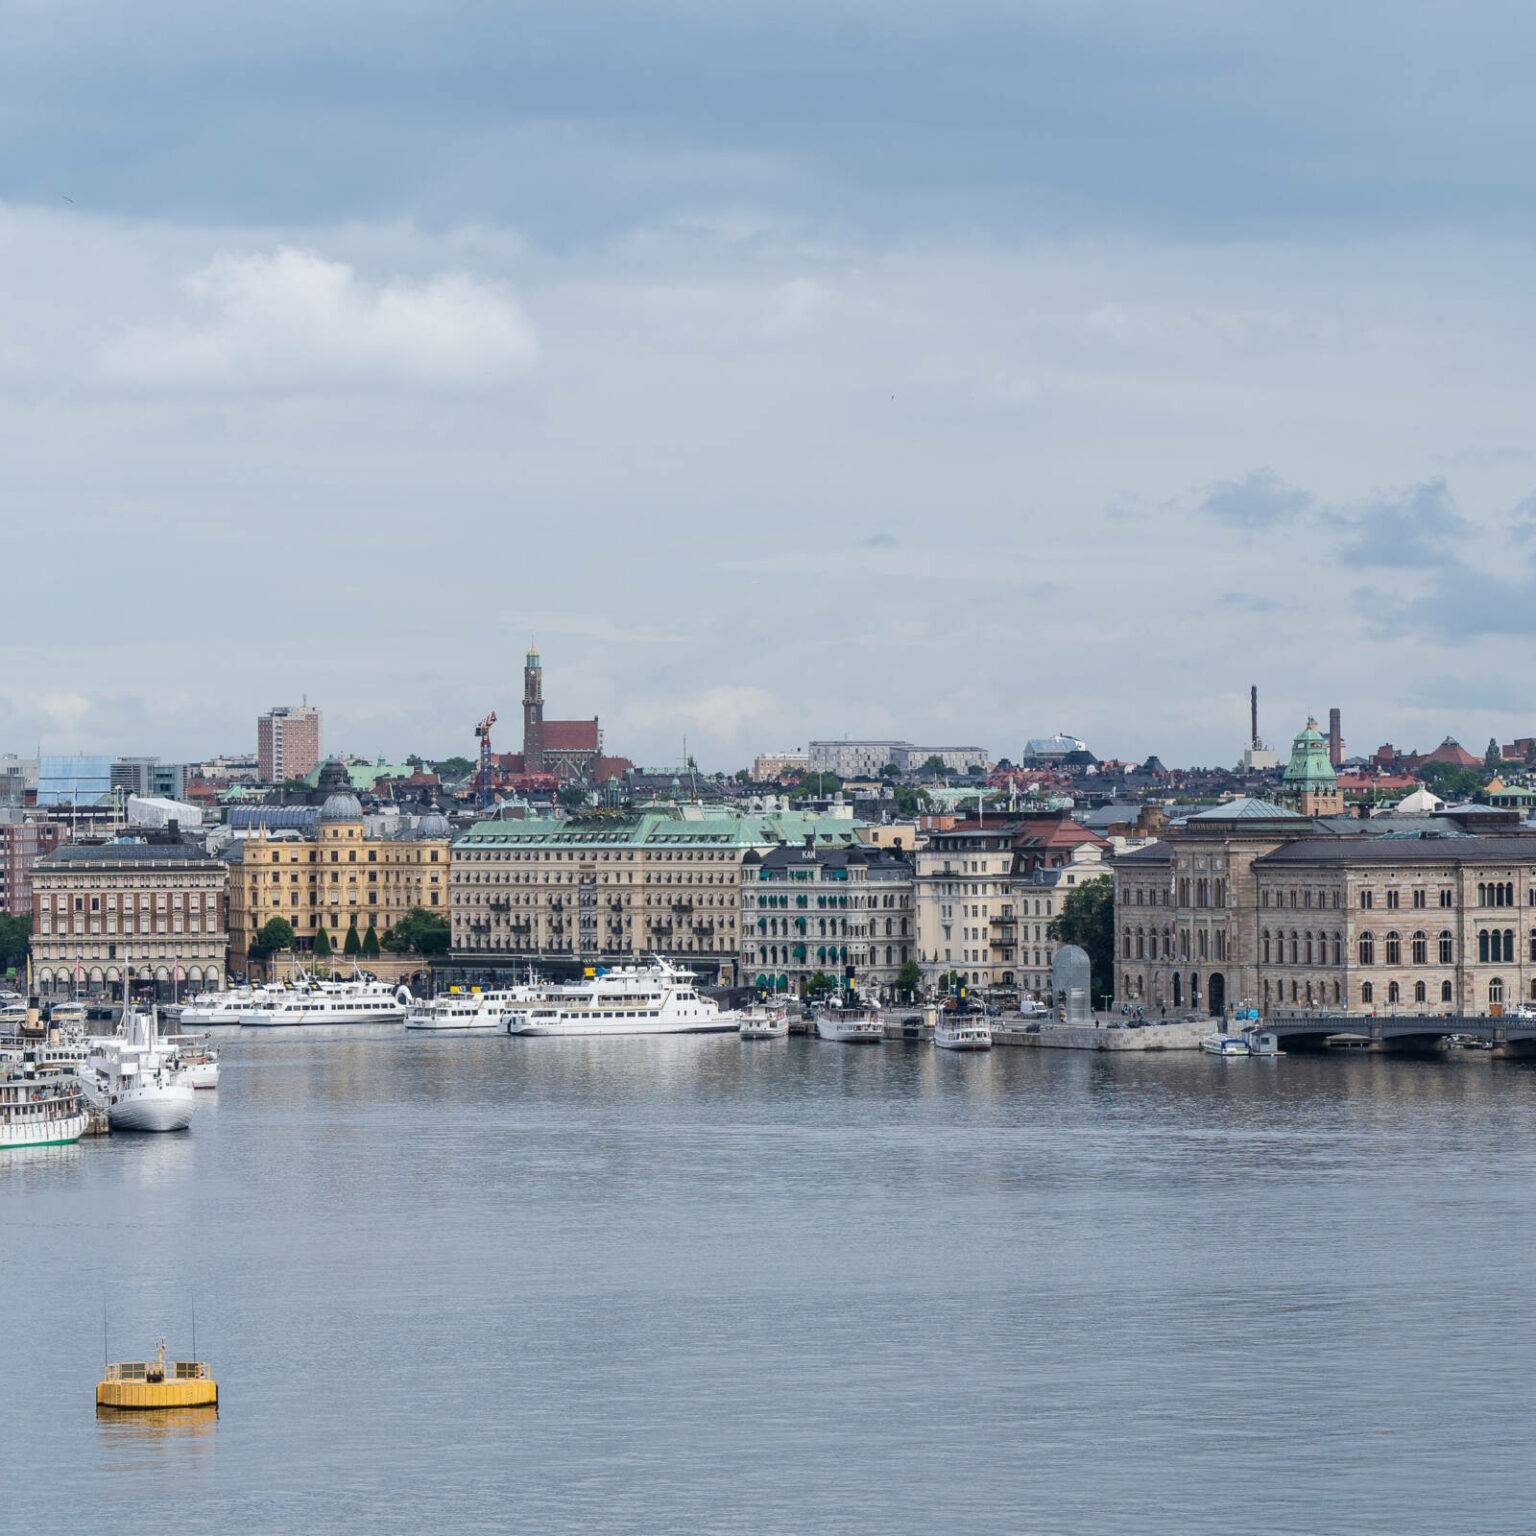 Auch von der Fjällgatan aus hat man einen guten Überblick über die Silhouette Stockholms mit seinem Hafen, prunkvollen Häusern am Wasser und Kirchtürmen im Hintergrund.